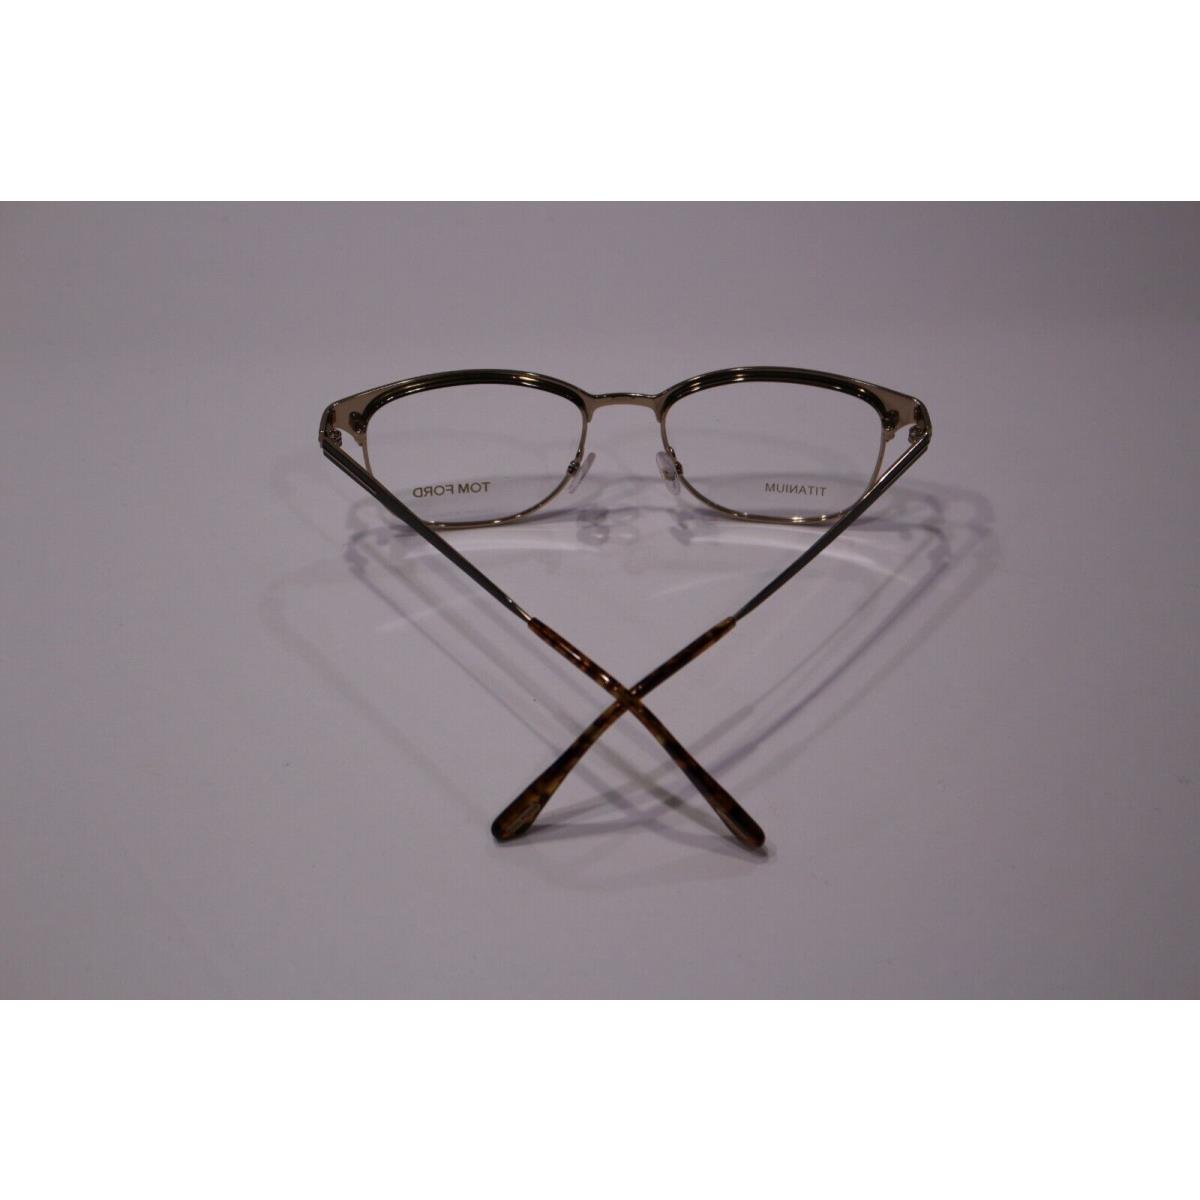 Tom Ford eyeglasses  - Metallic Brown/Light Havana Frame 1